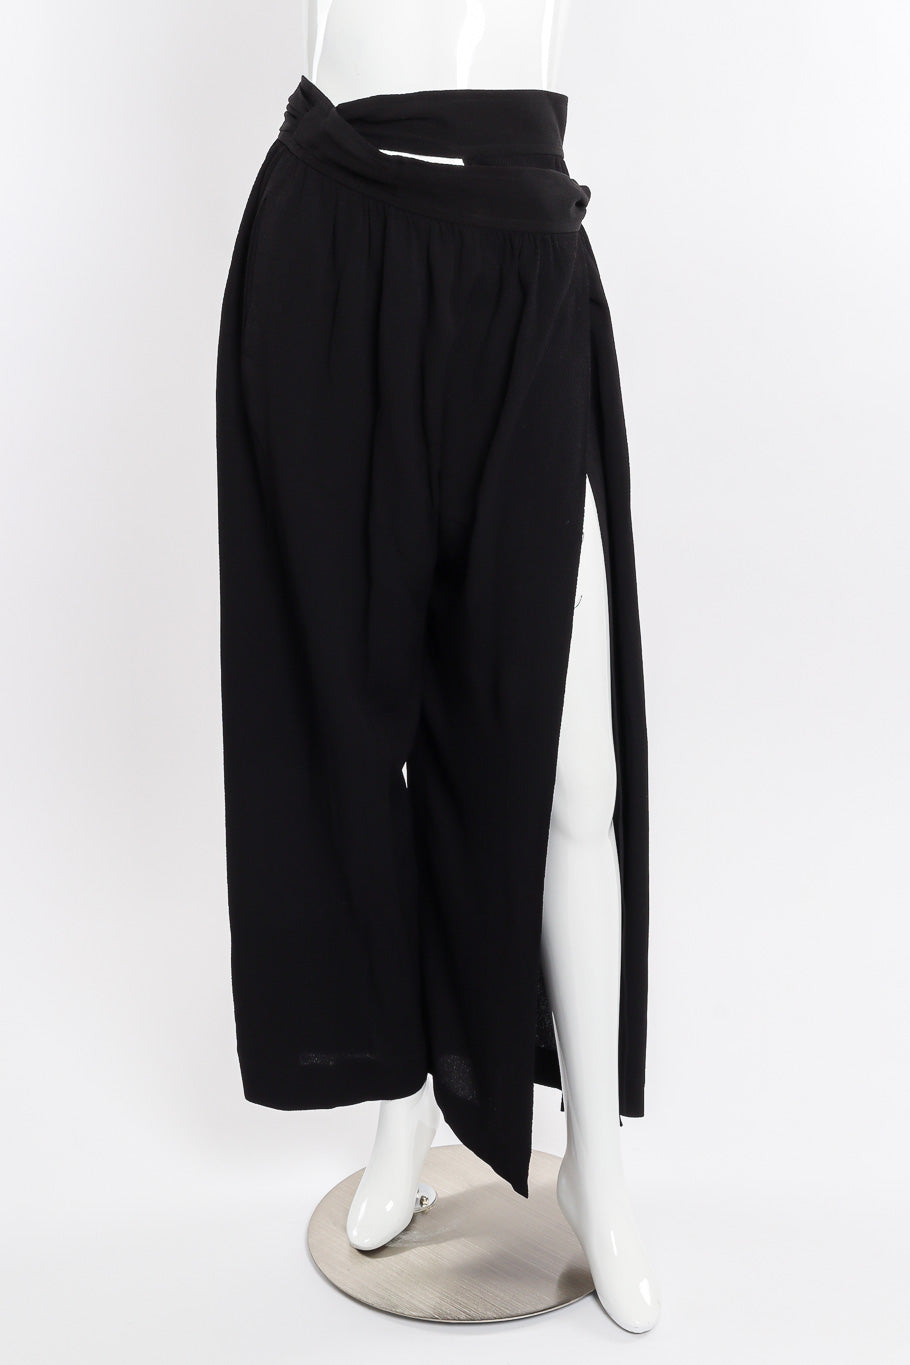 Wrap trouser by Yves Saint Laurent on mannequin leg out @recessla